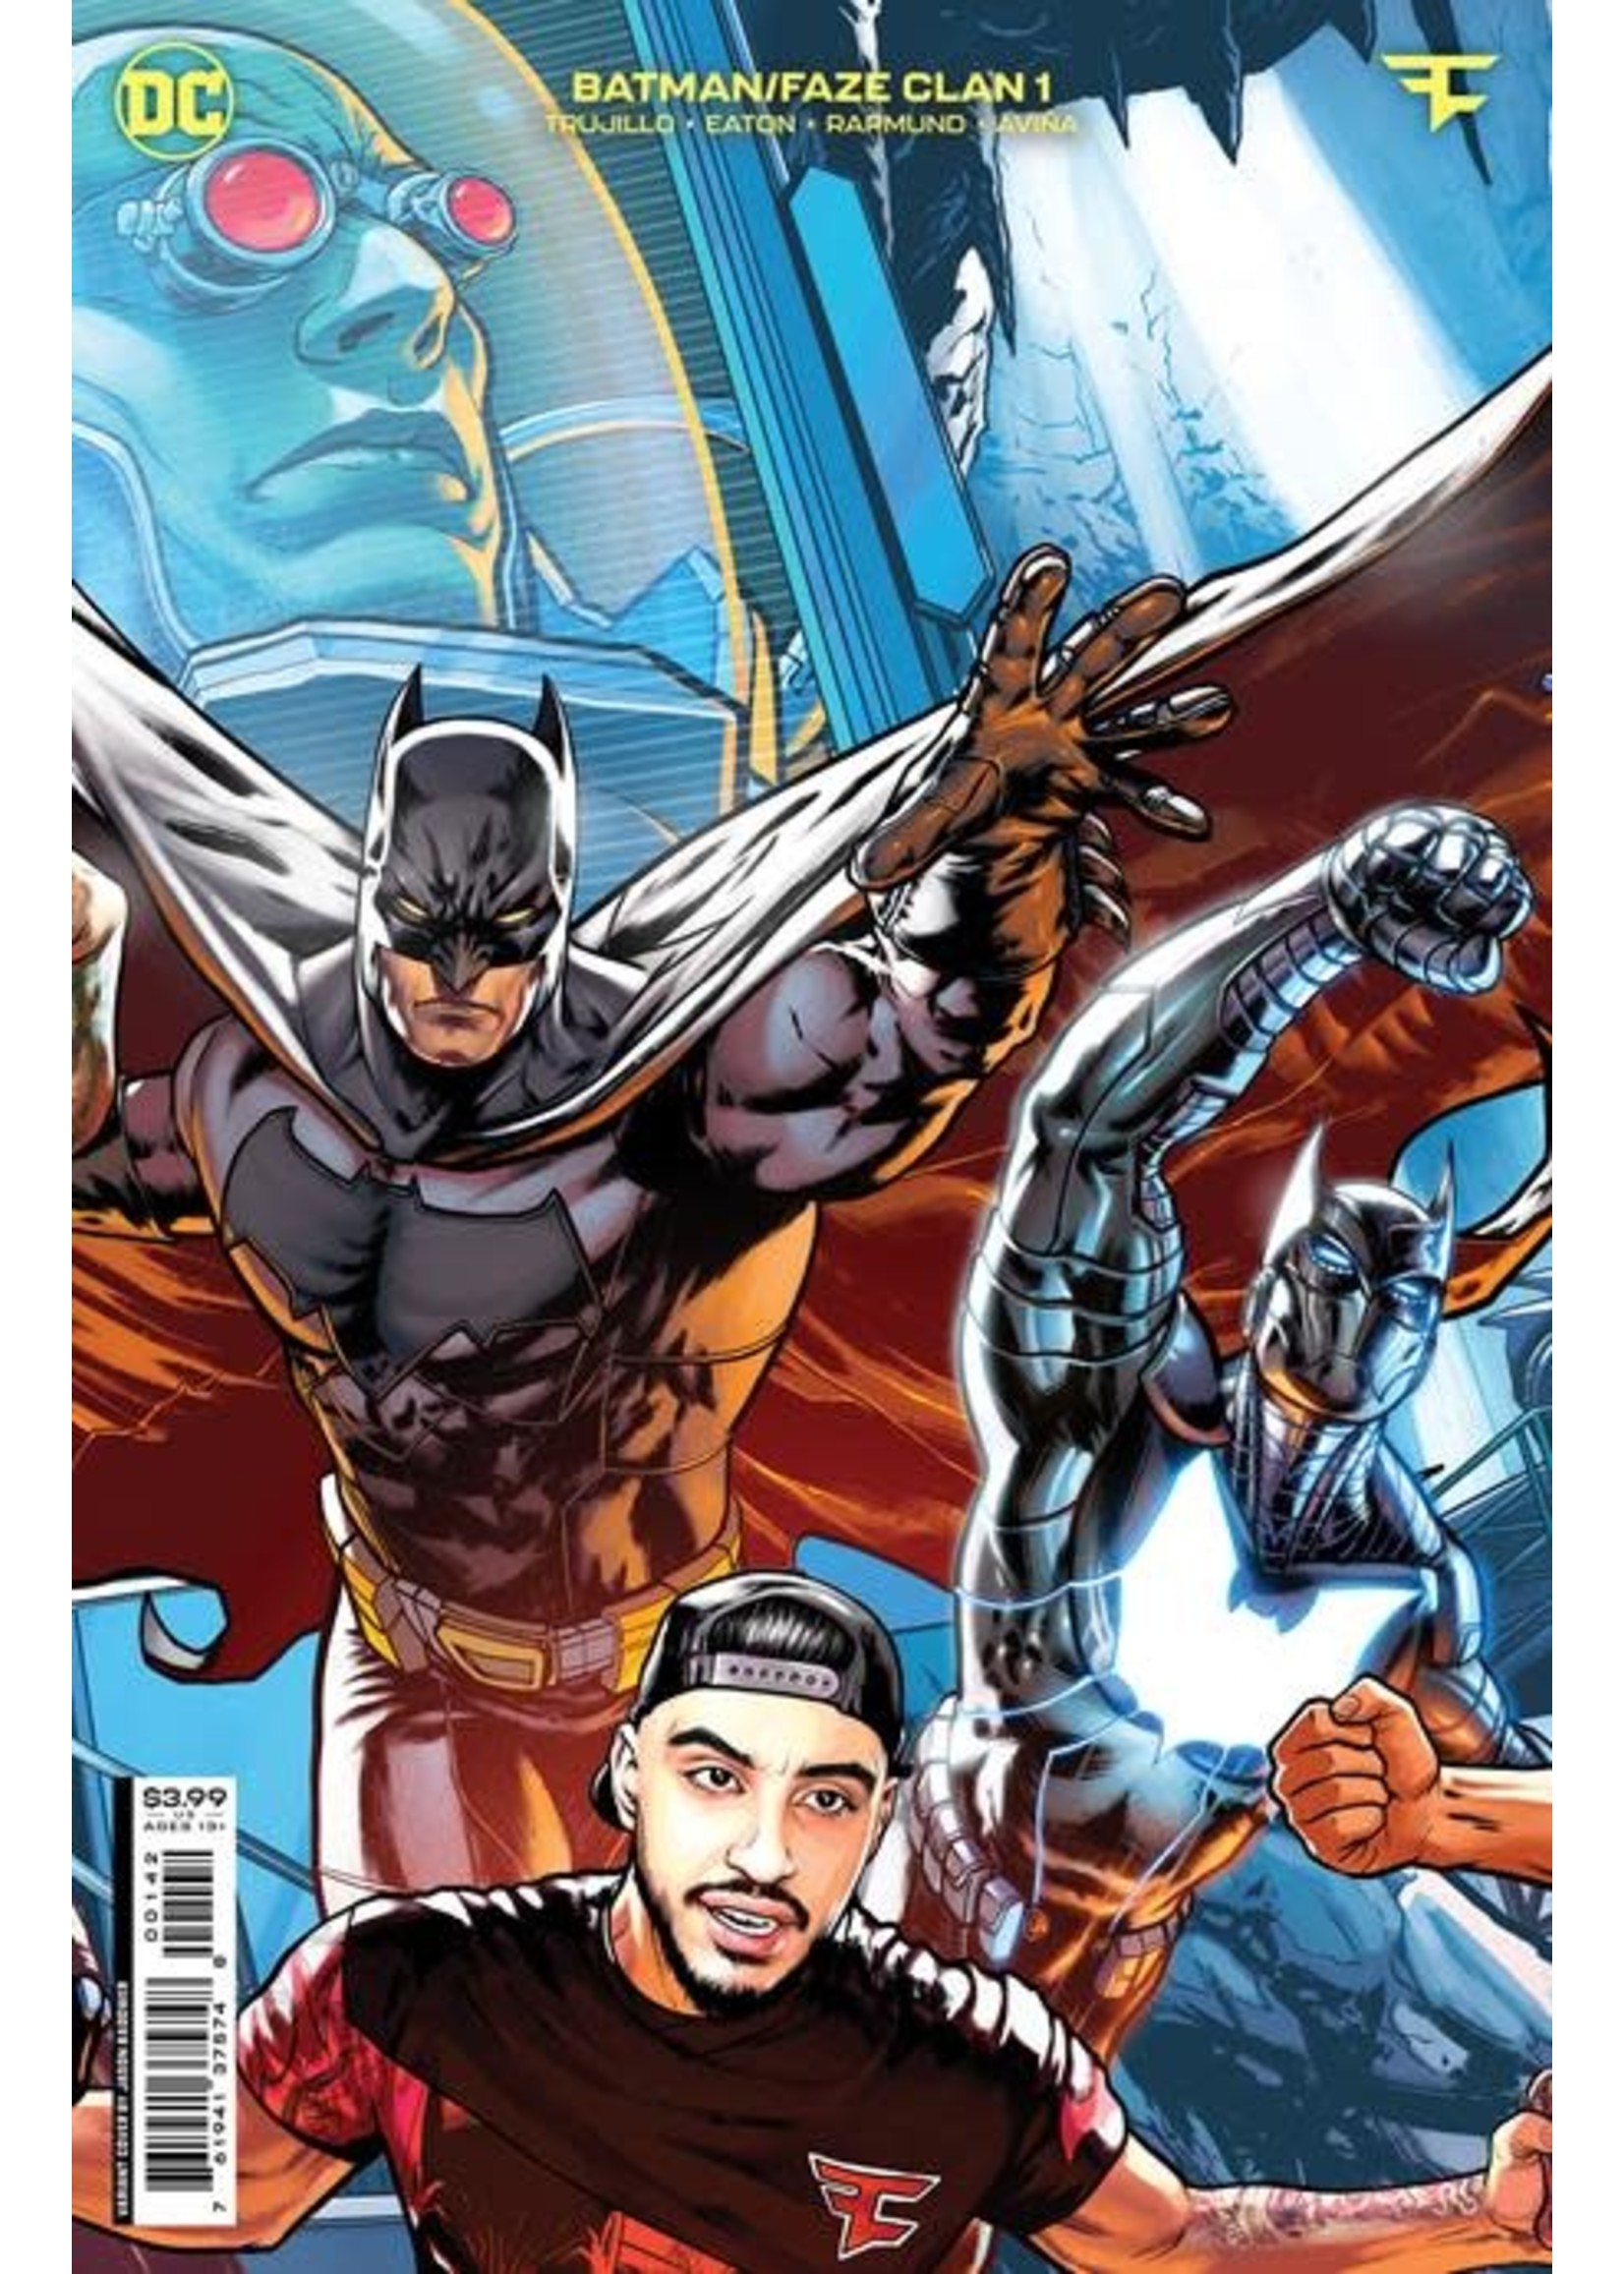 DC COMICS BATMAN FAZE CLAN #1 (ONE SHOT) CVR D CONN 3 BATMAN